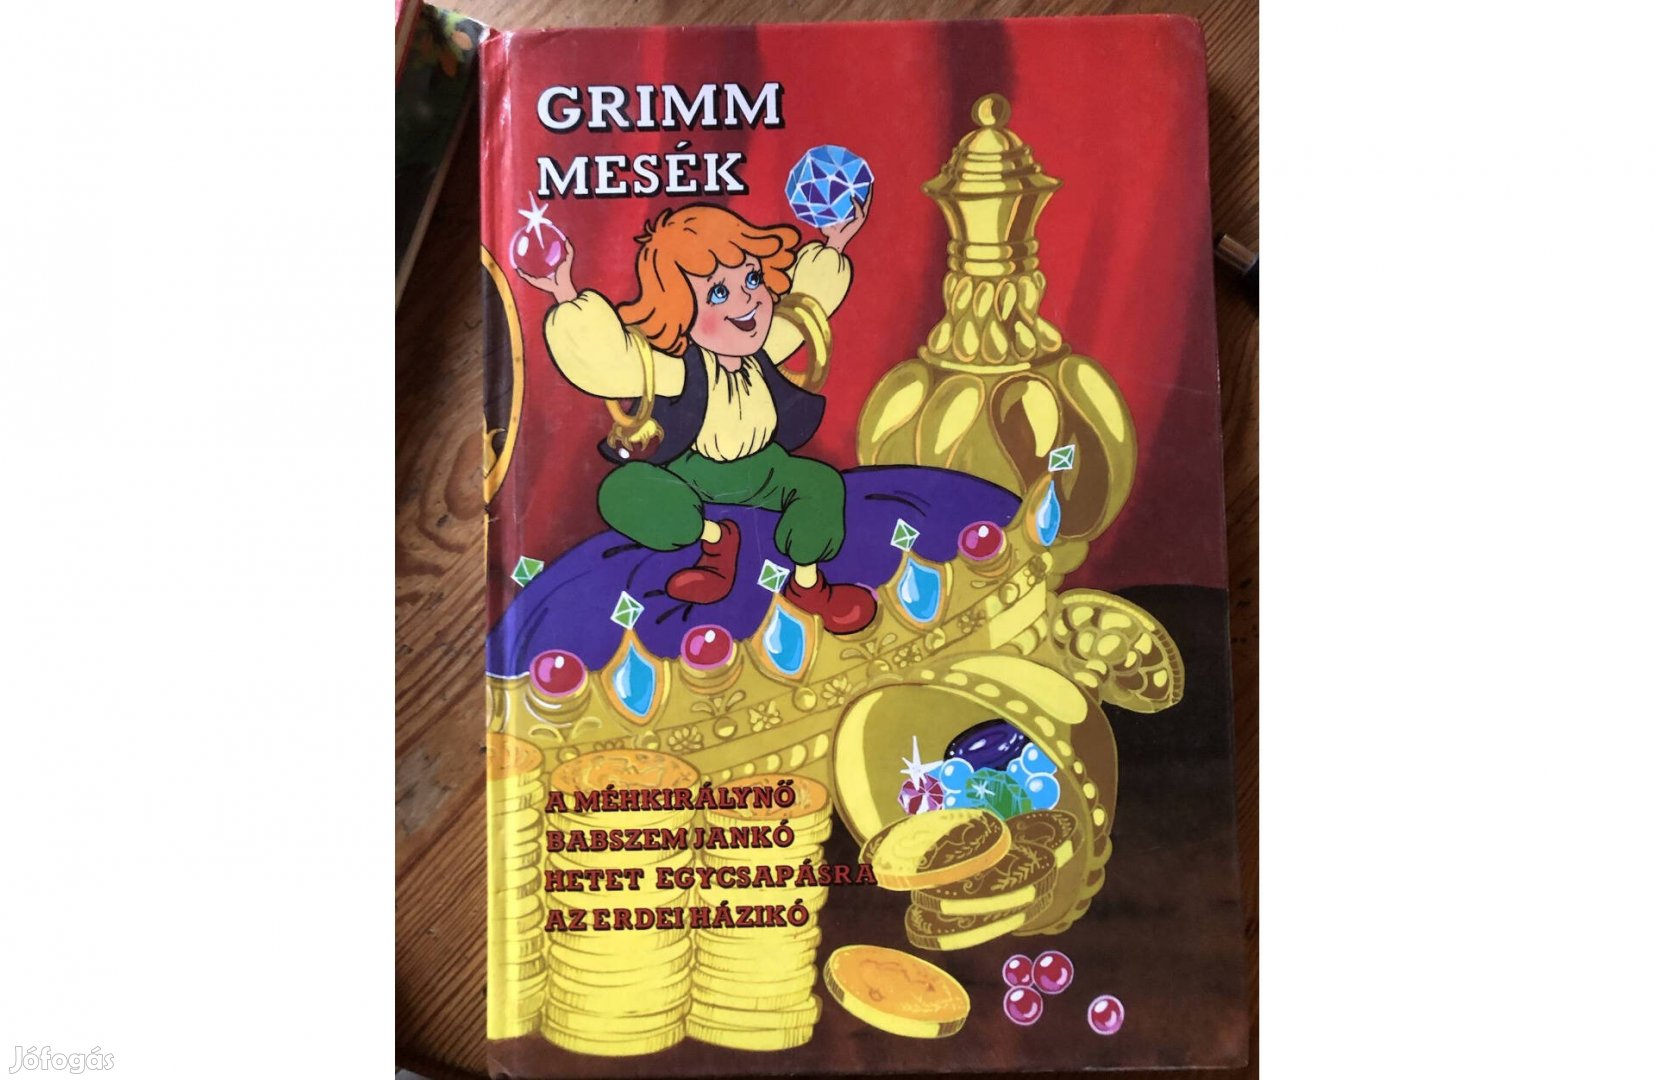 Grimm mesék mesekönyv 4 mesével 1800 Ft :Lenti